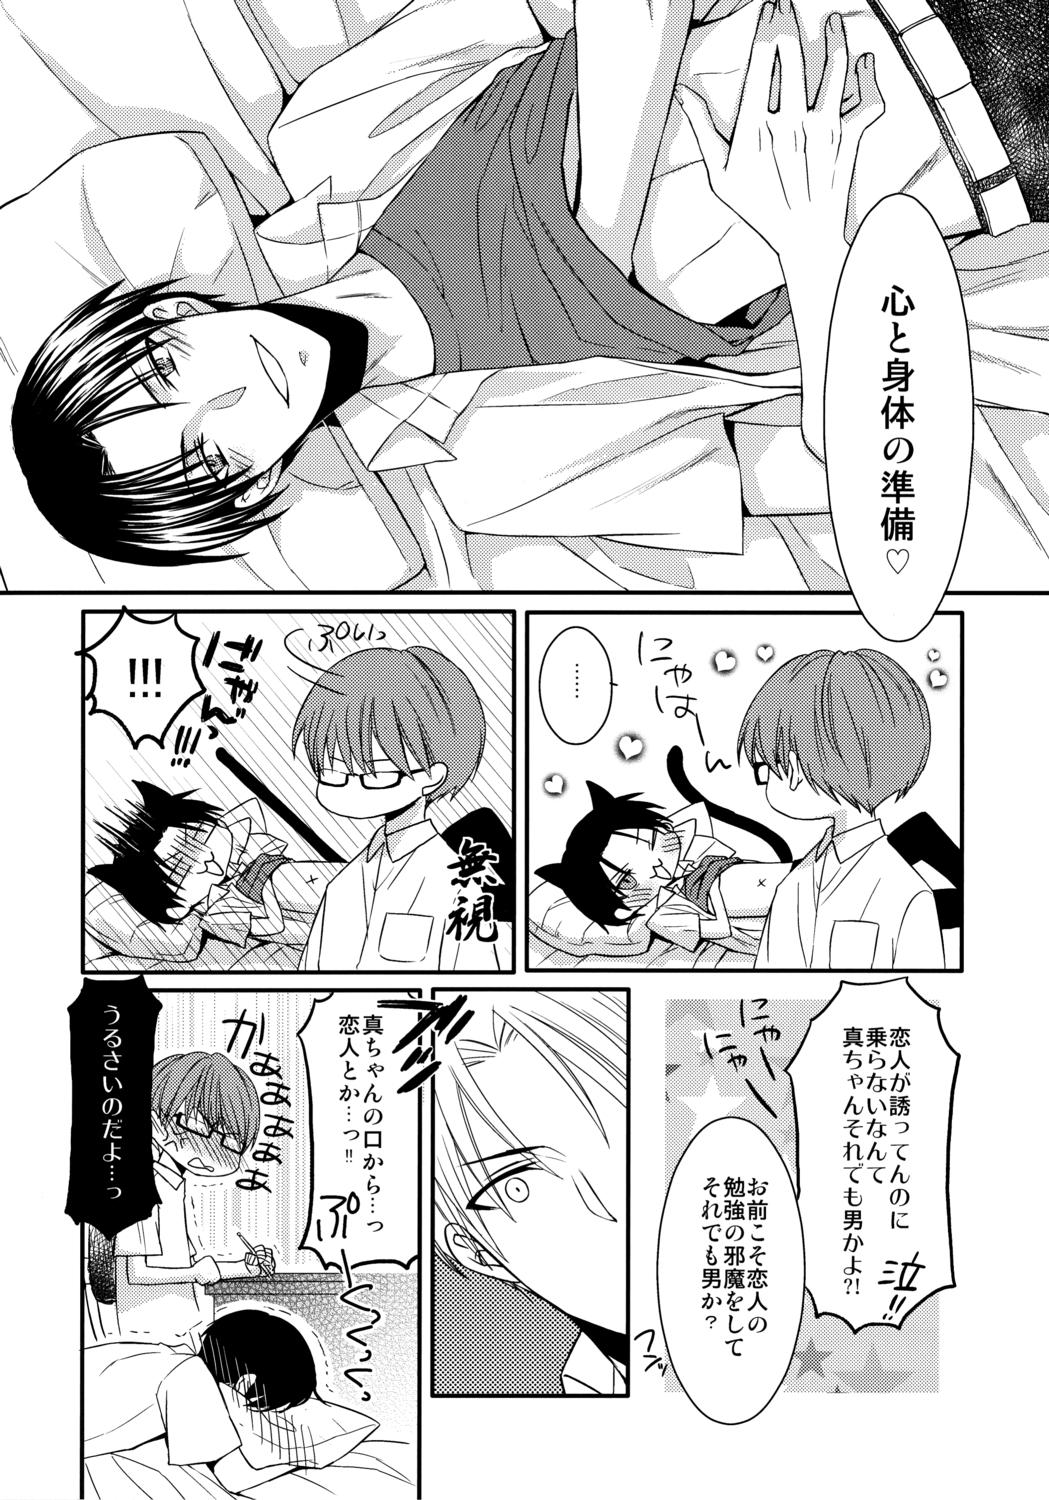 Publico Kamatte Shin-chan! - Kuroko no basuke Gays - Page 4